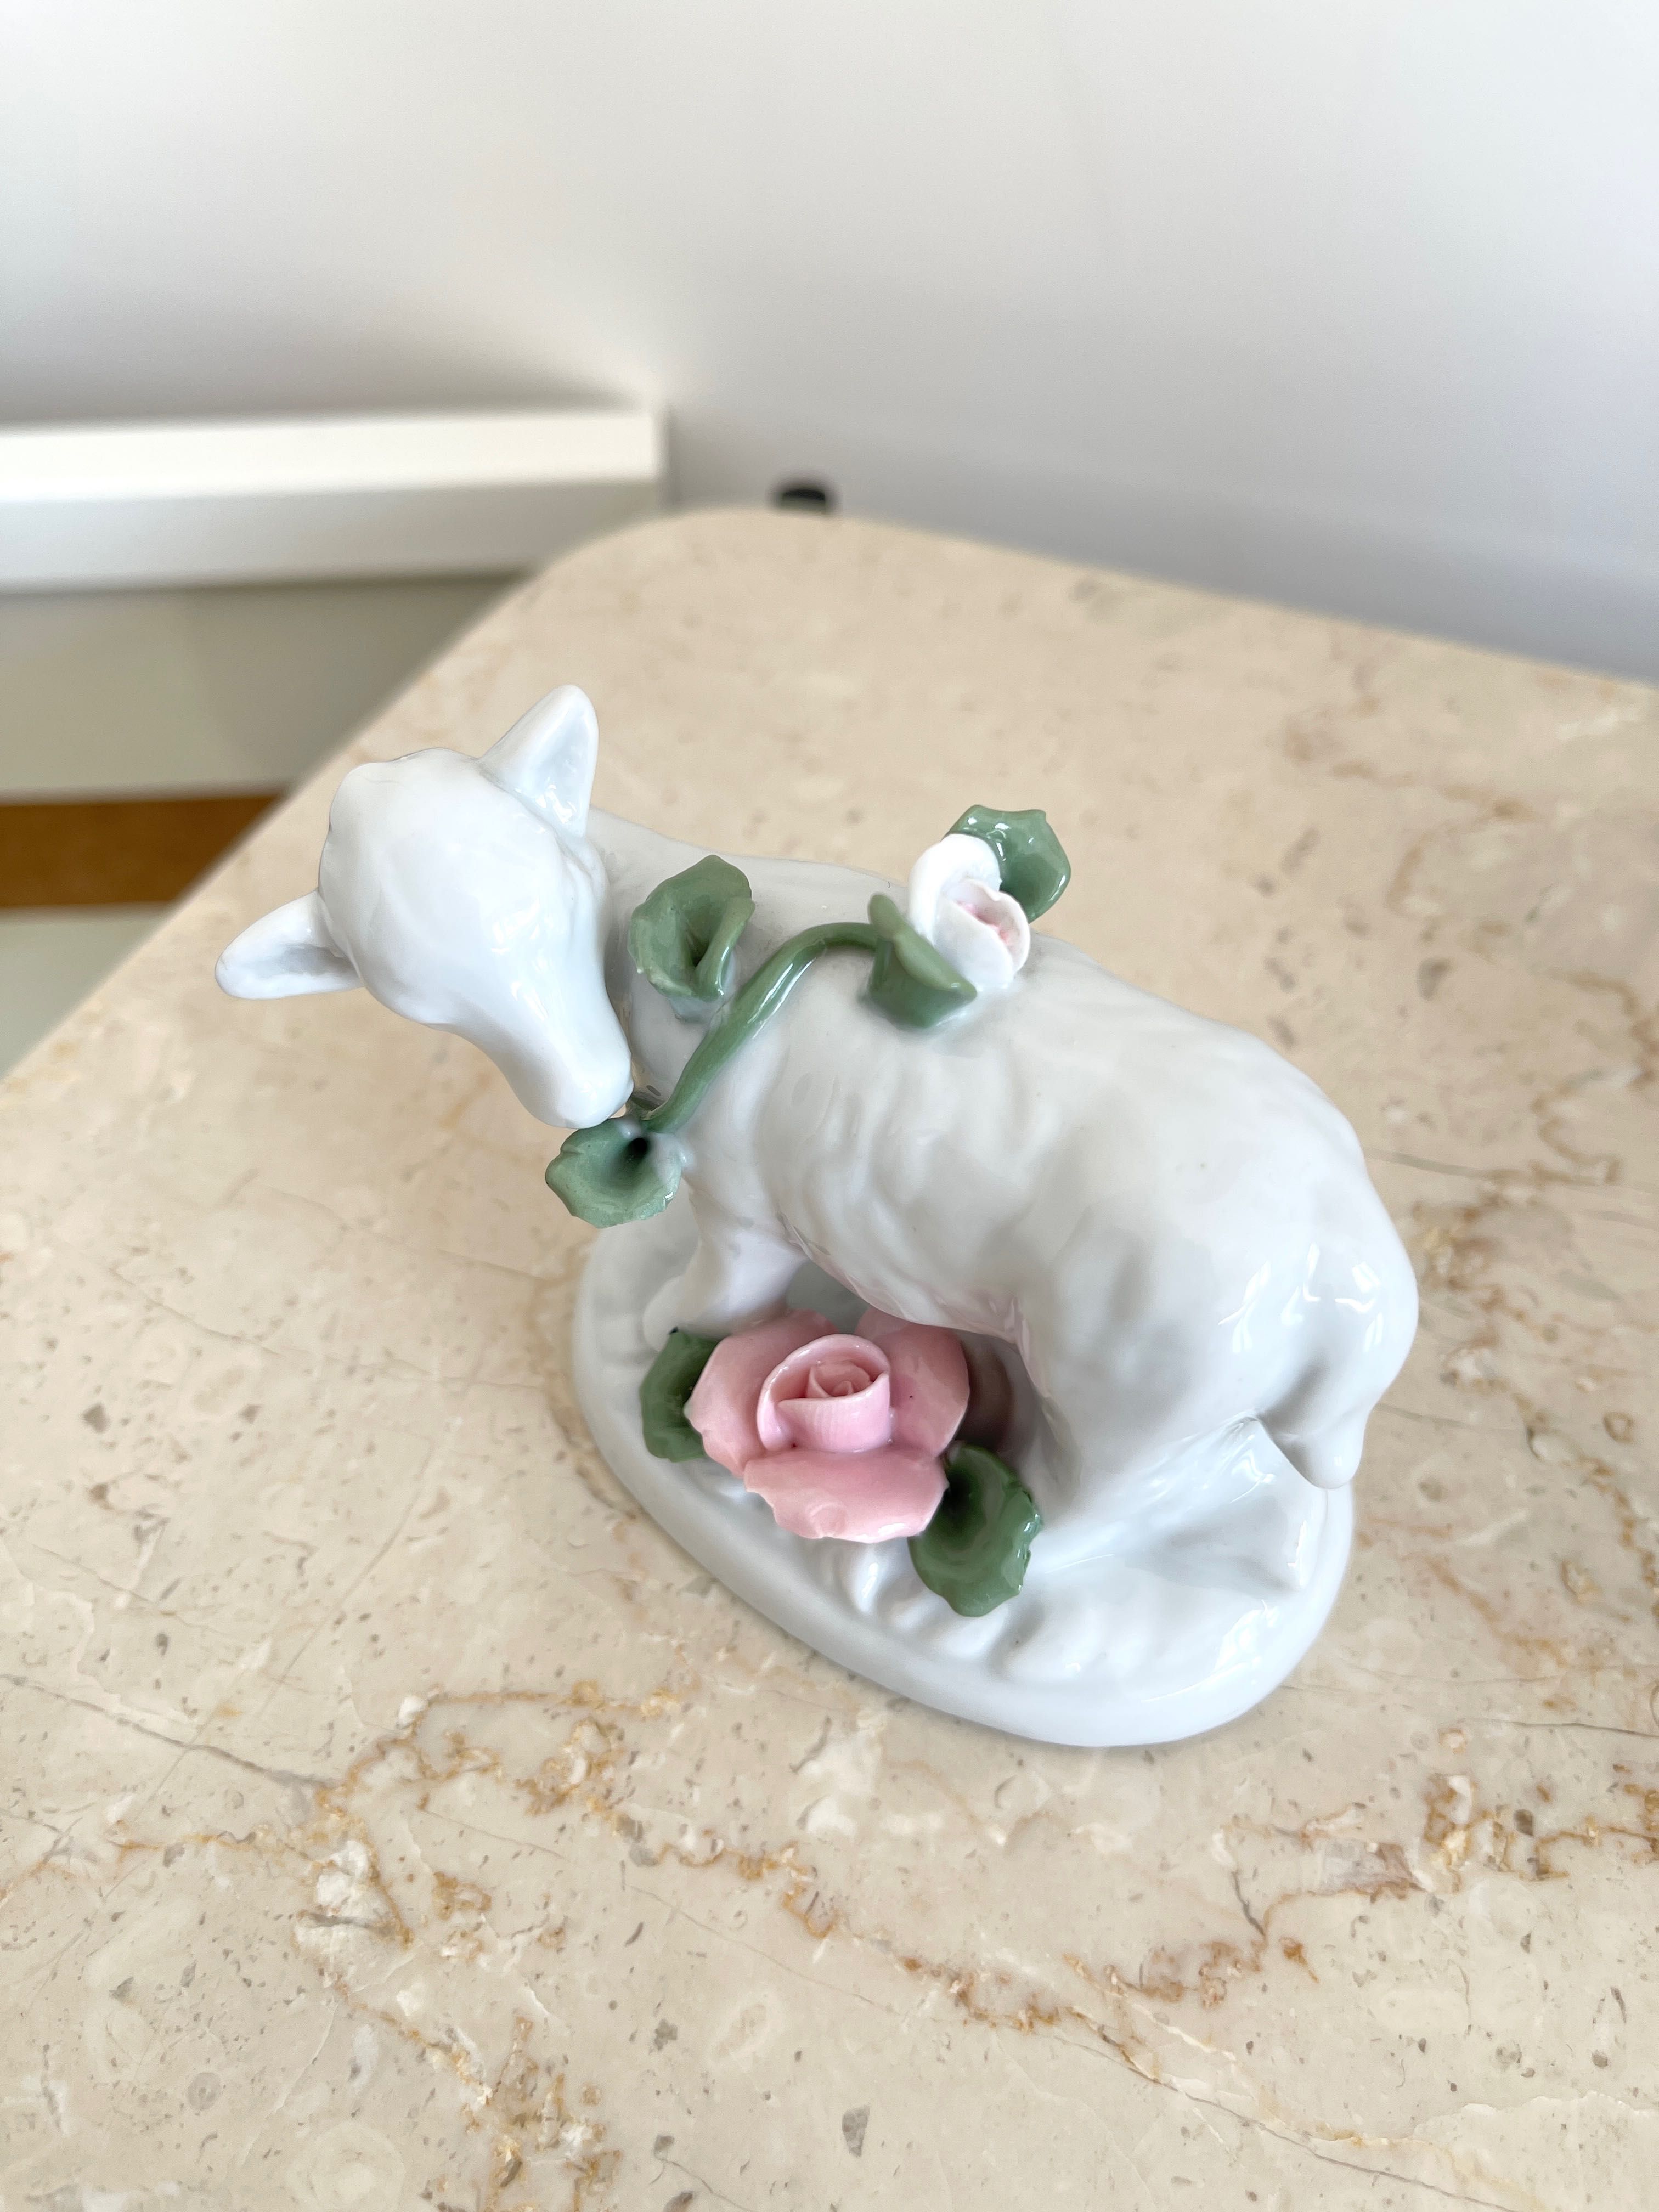 Śliczna porcelanowa figurka zwierzątko zwierzęta porcelana antyk